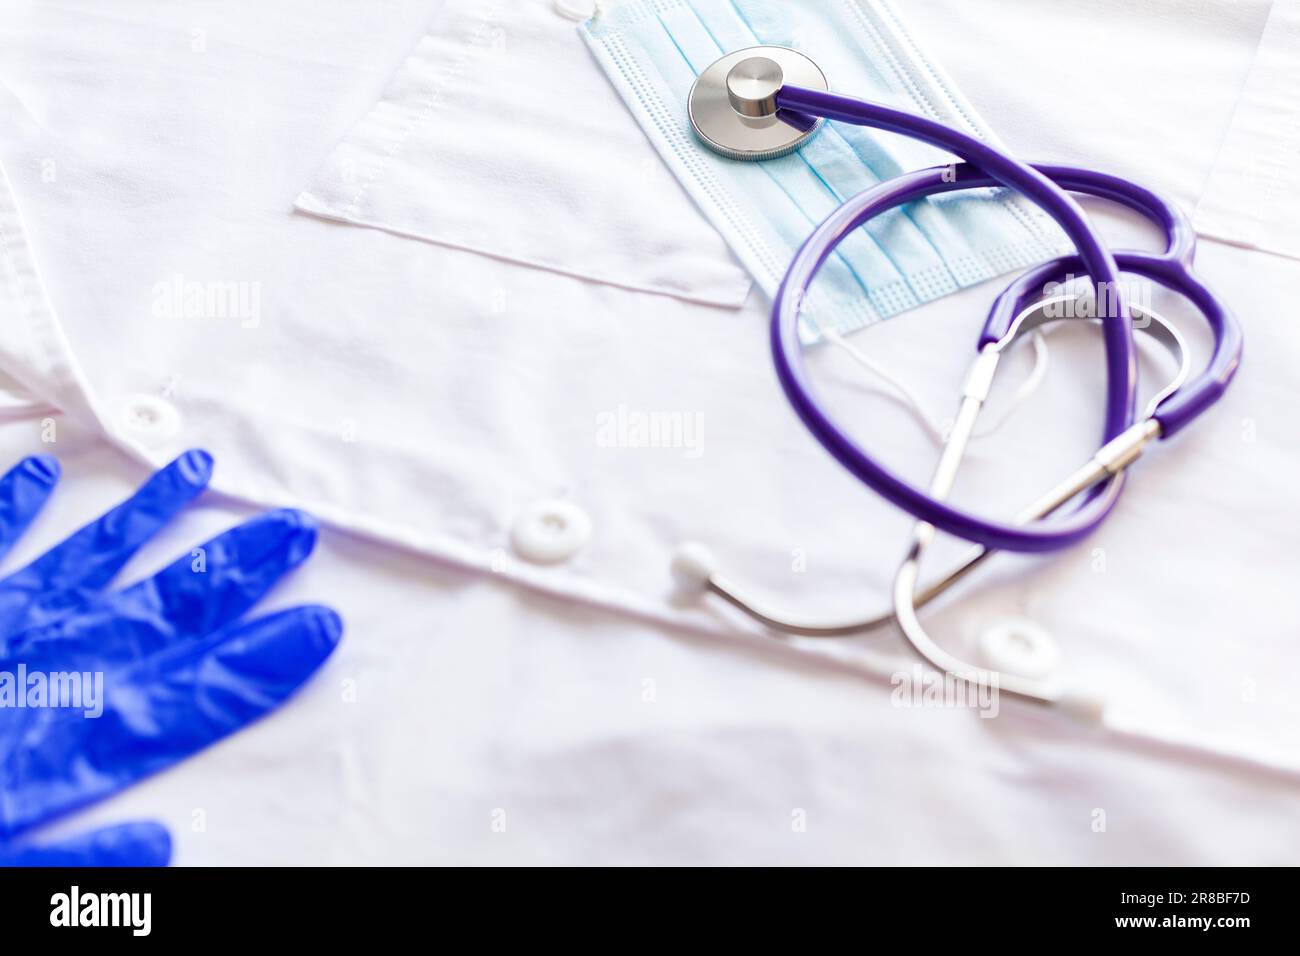 Nahaufnahme eines Stethoskops und einer Operationsmaske über einem weißen medizinischen Kittel und einem Teil eines blauen Latexhandschuhs. Stockfoto